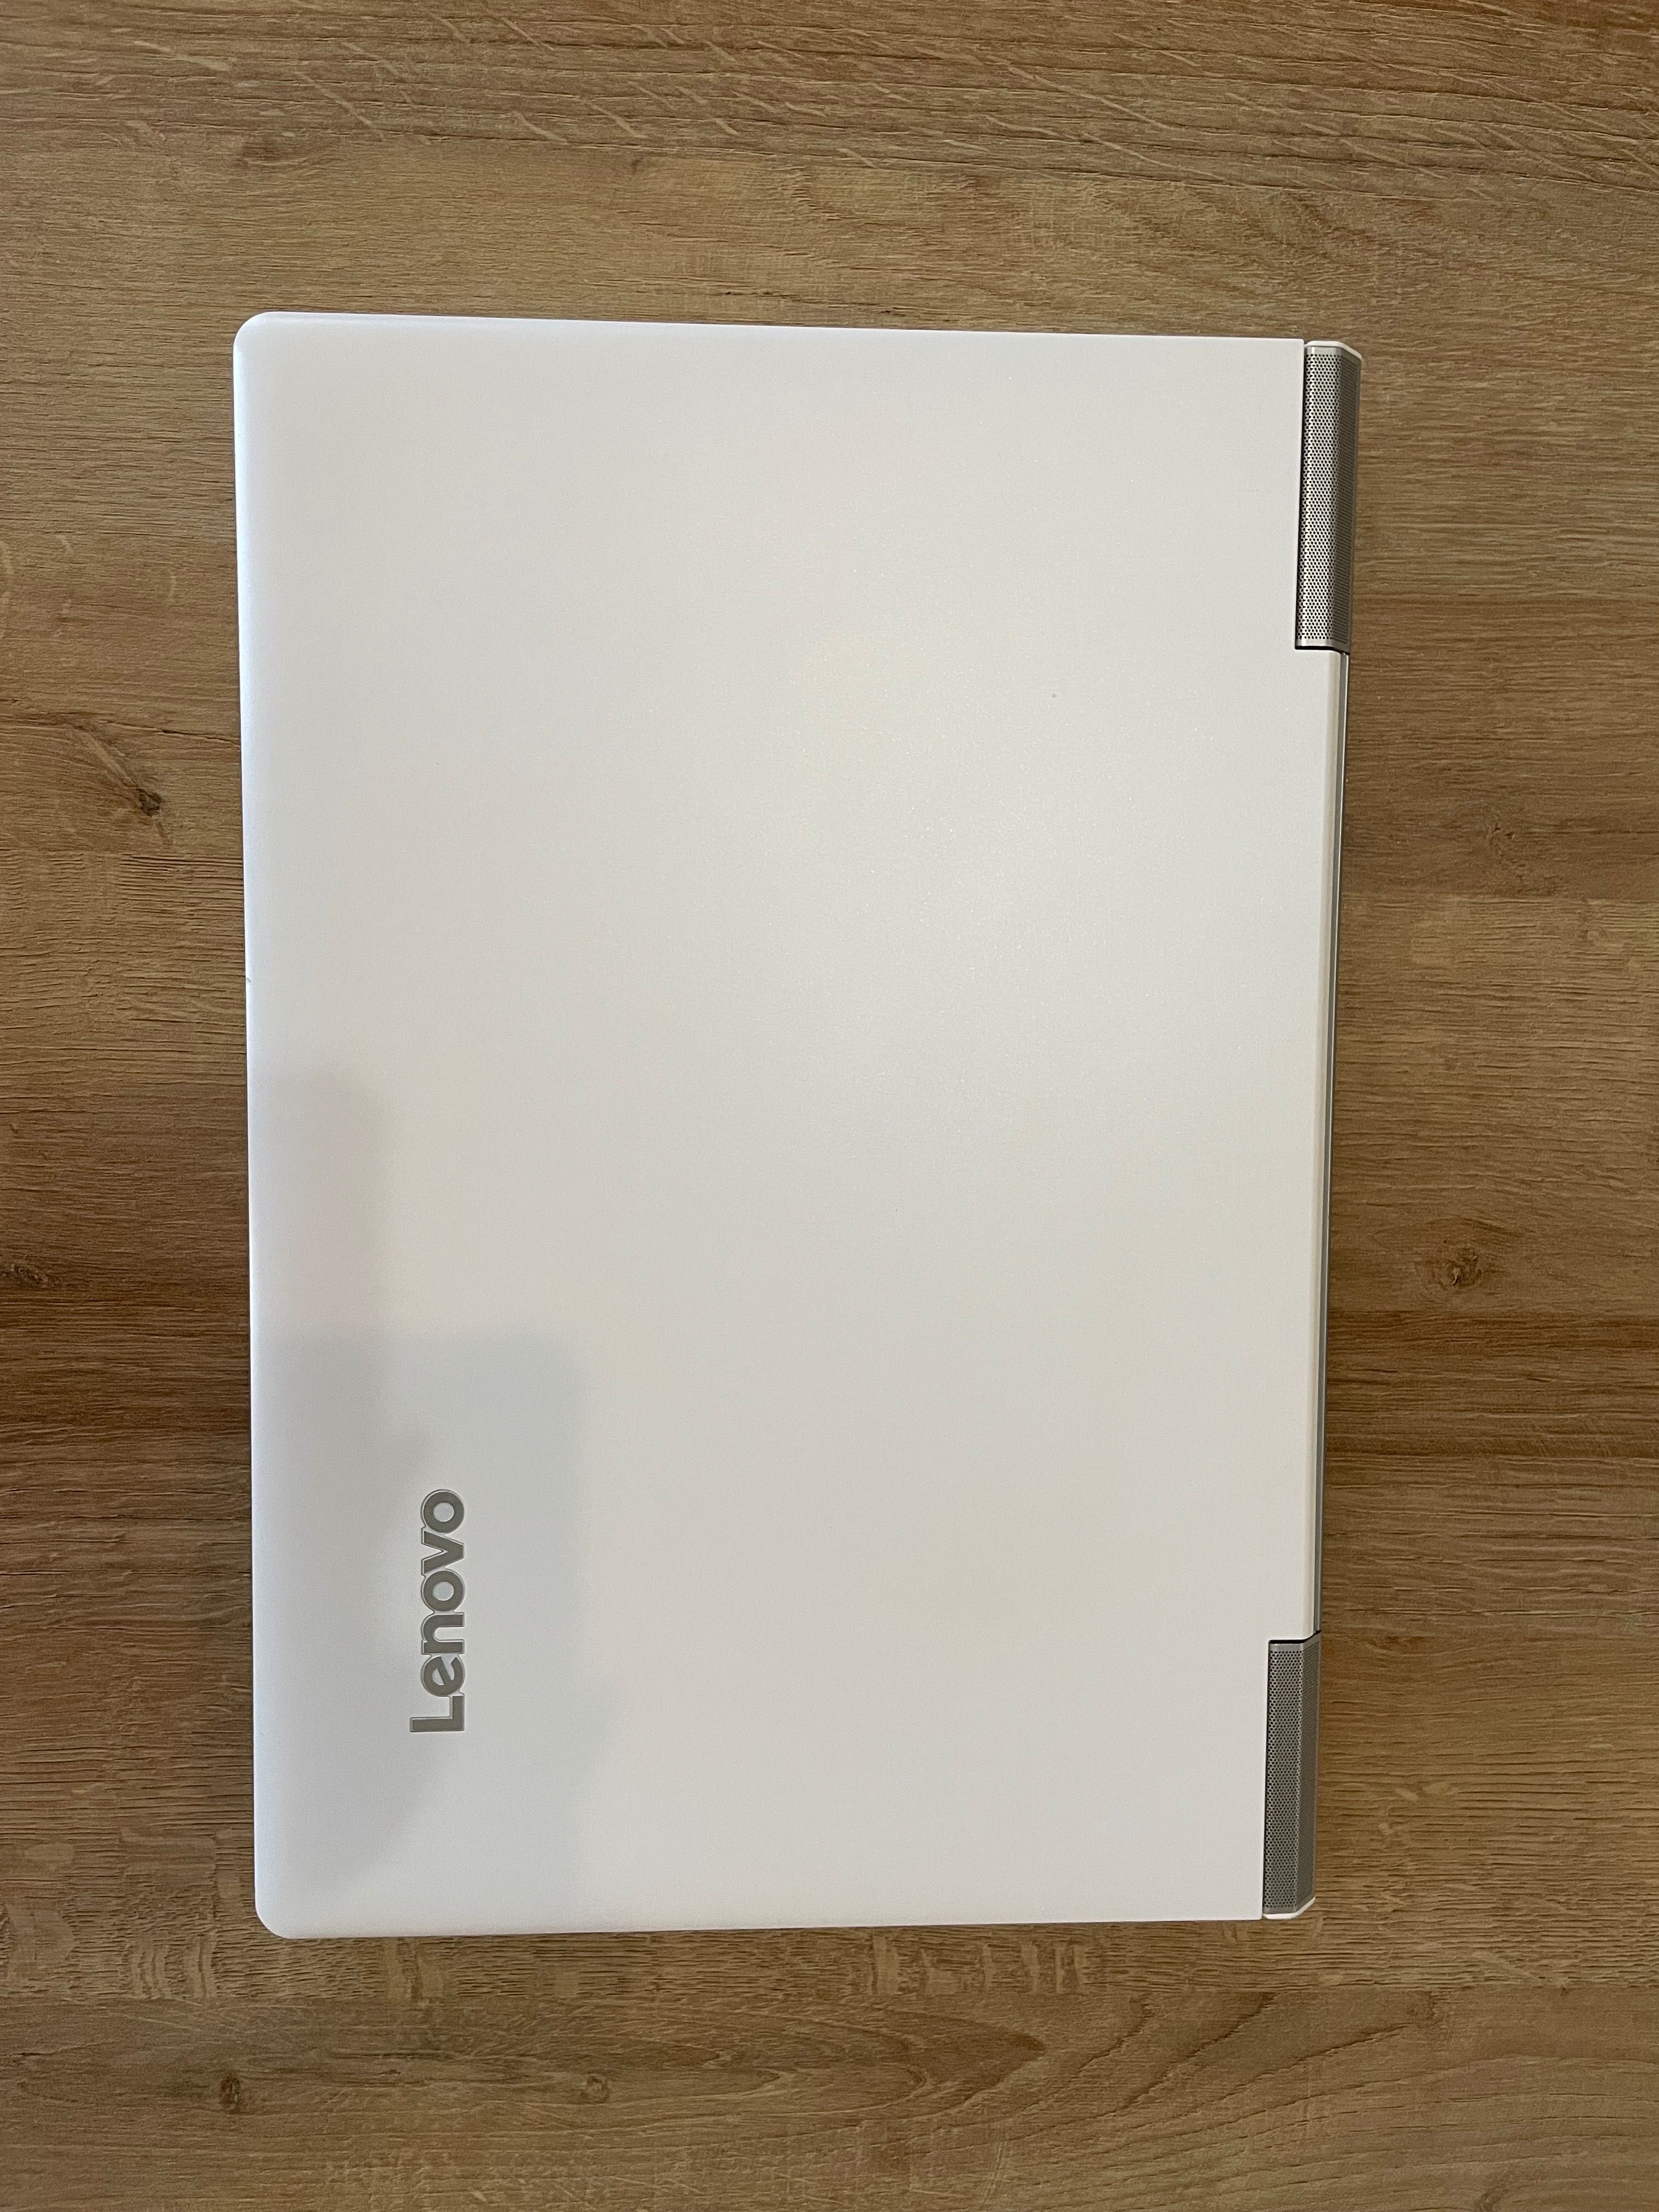 Lenovo IdeaPad 700- 15ISK i7 1TB